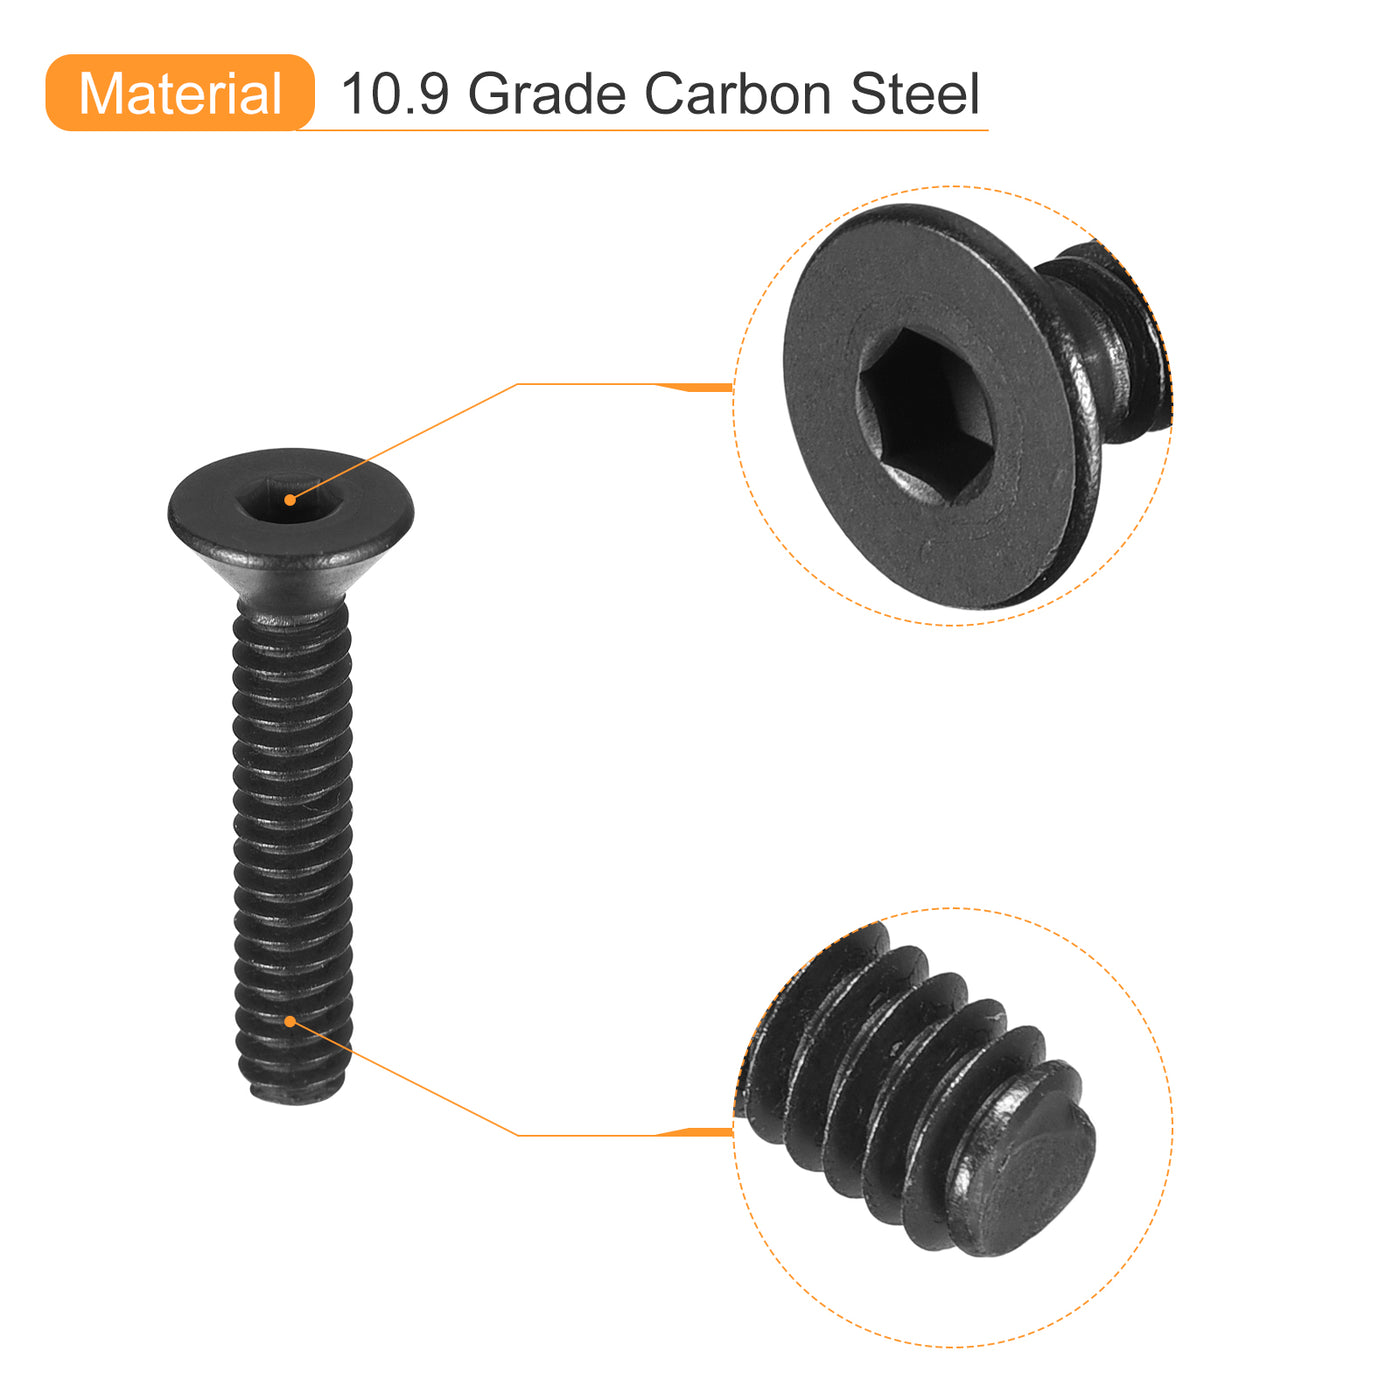 uxcell Uxcell #4-40x5/8" Flat Head Socket Cap Screws, 10.9 Grade Carbon, Black, 20pcs